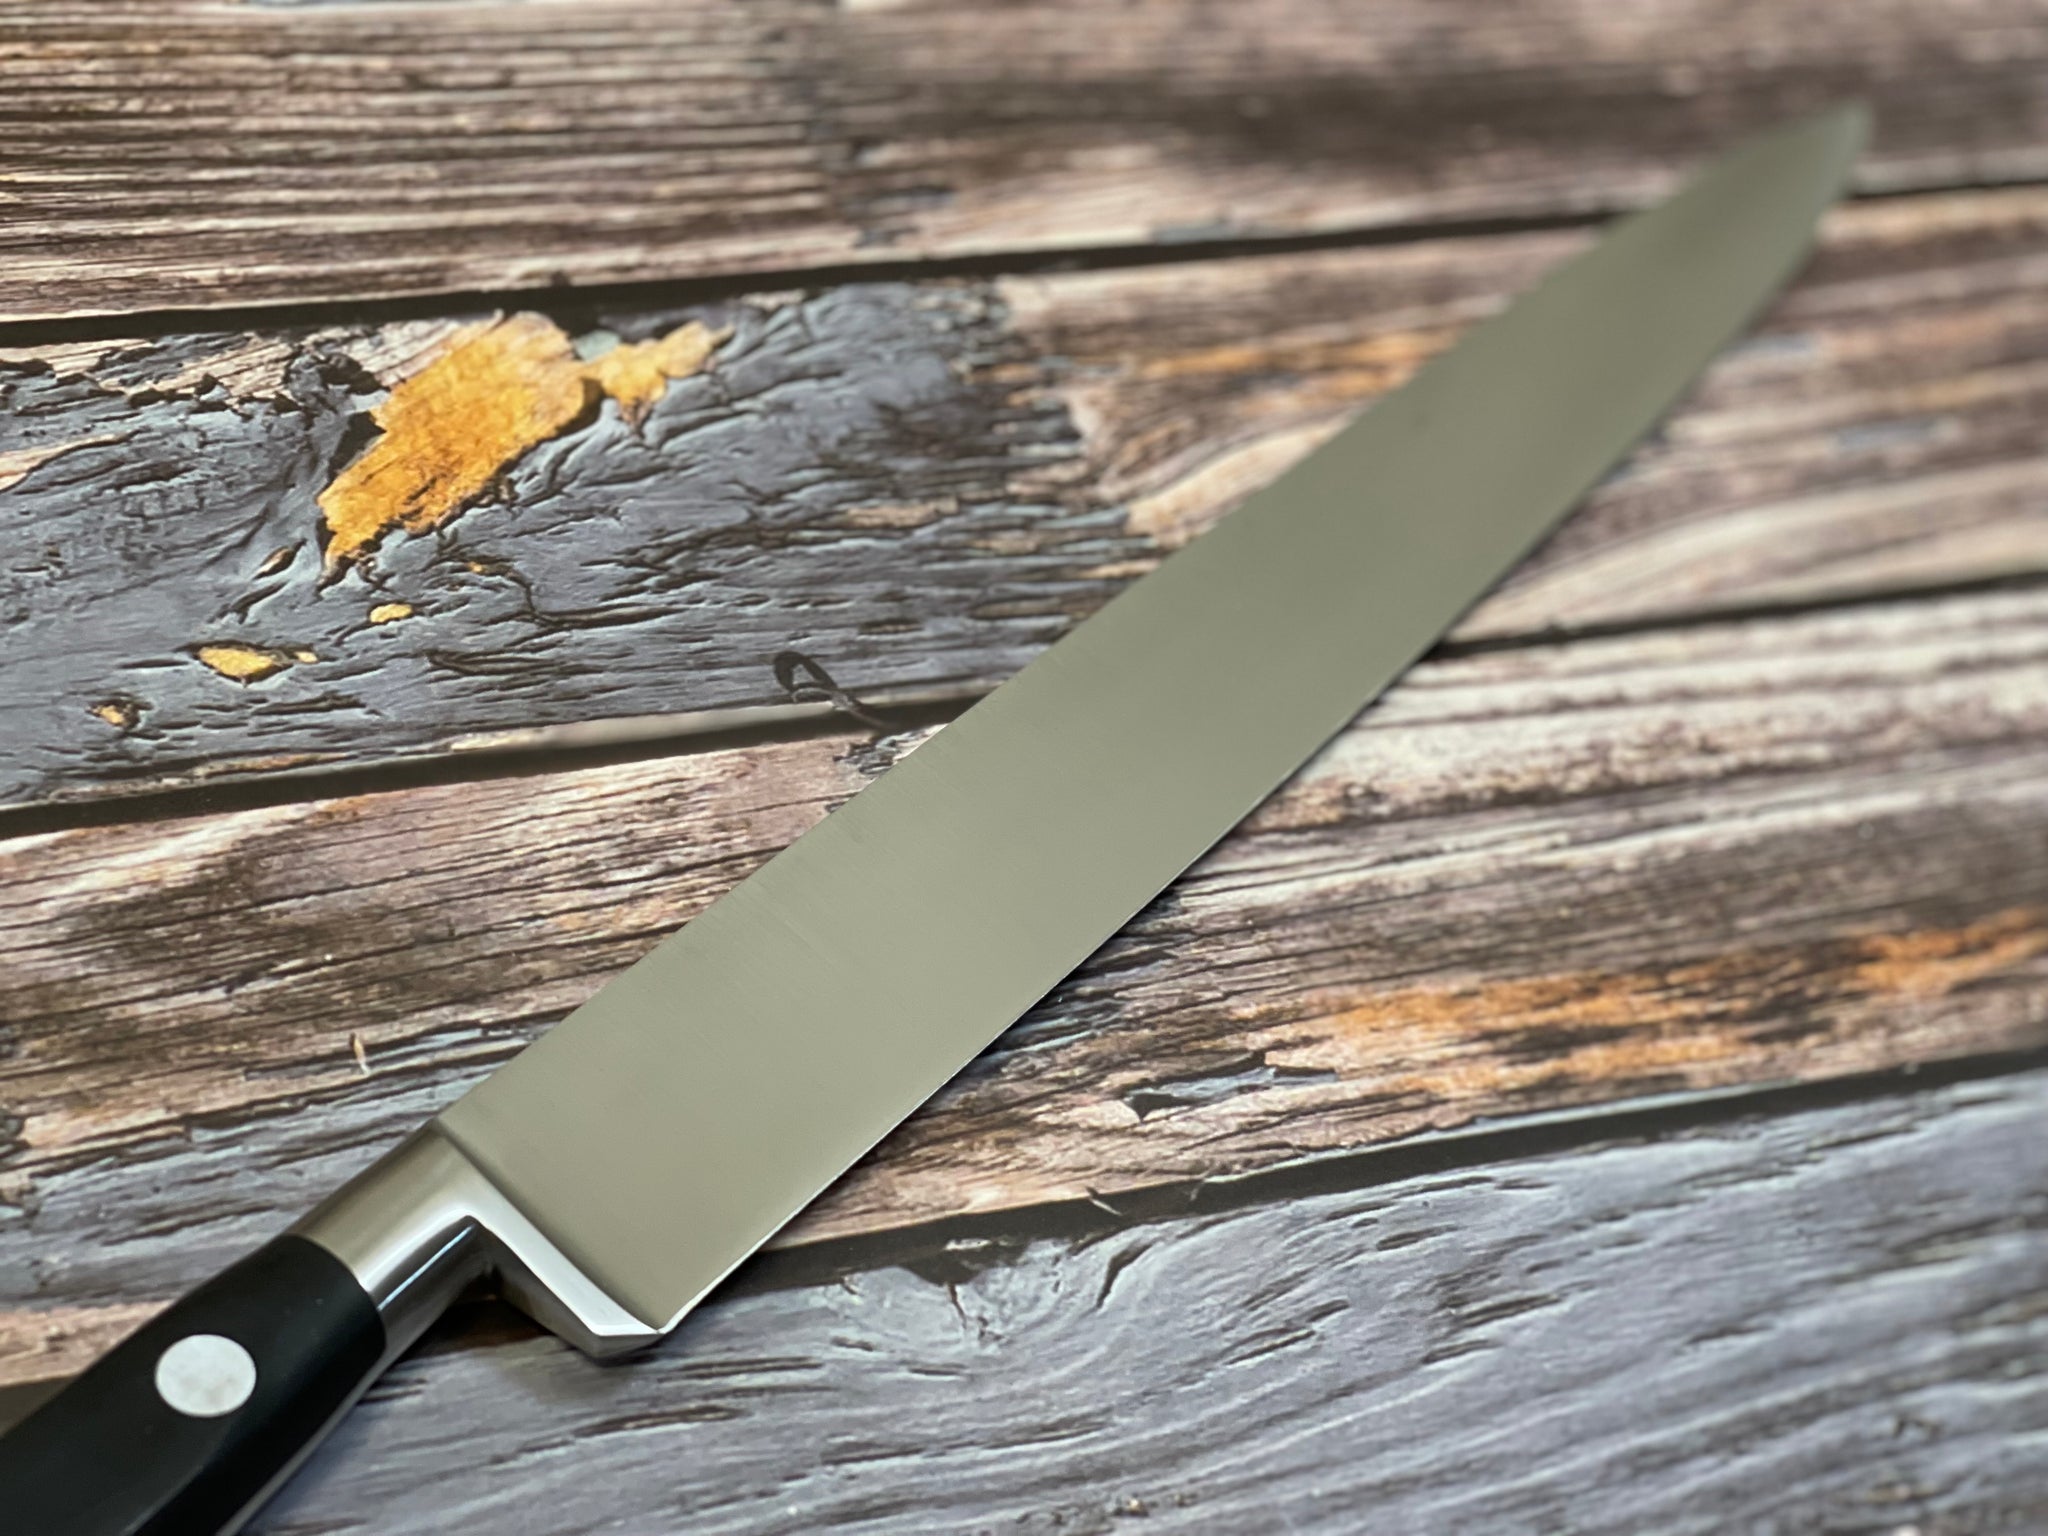 Best kitchen knife, which kitchen knife to choose ? Sabatier K